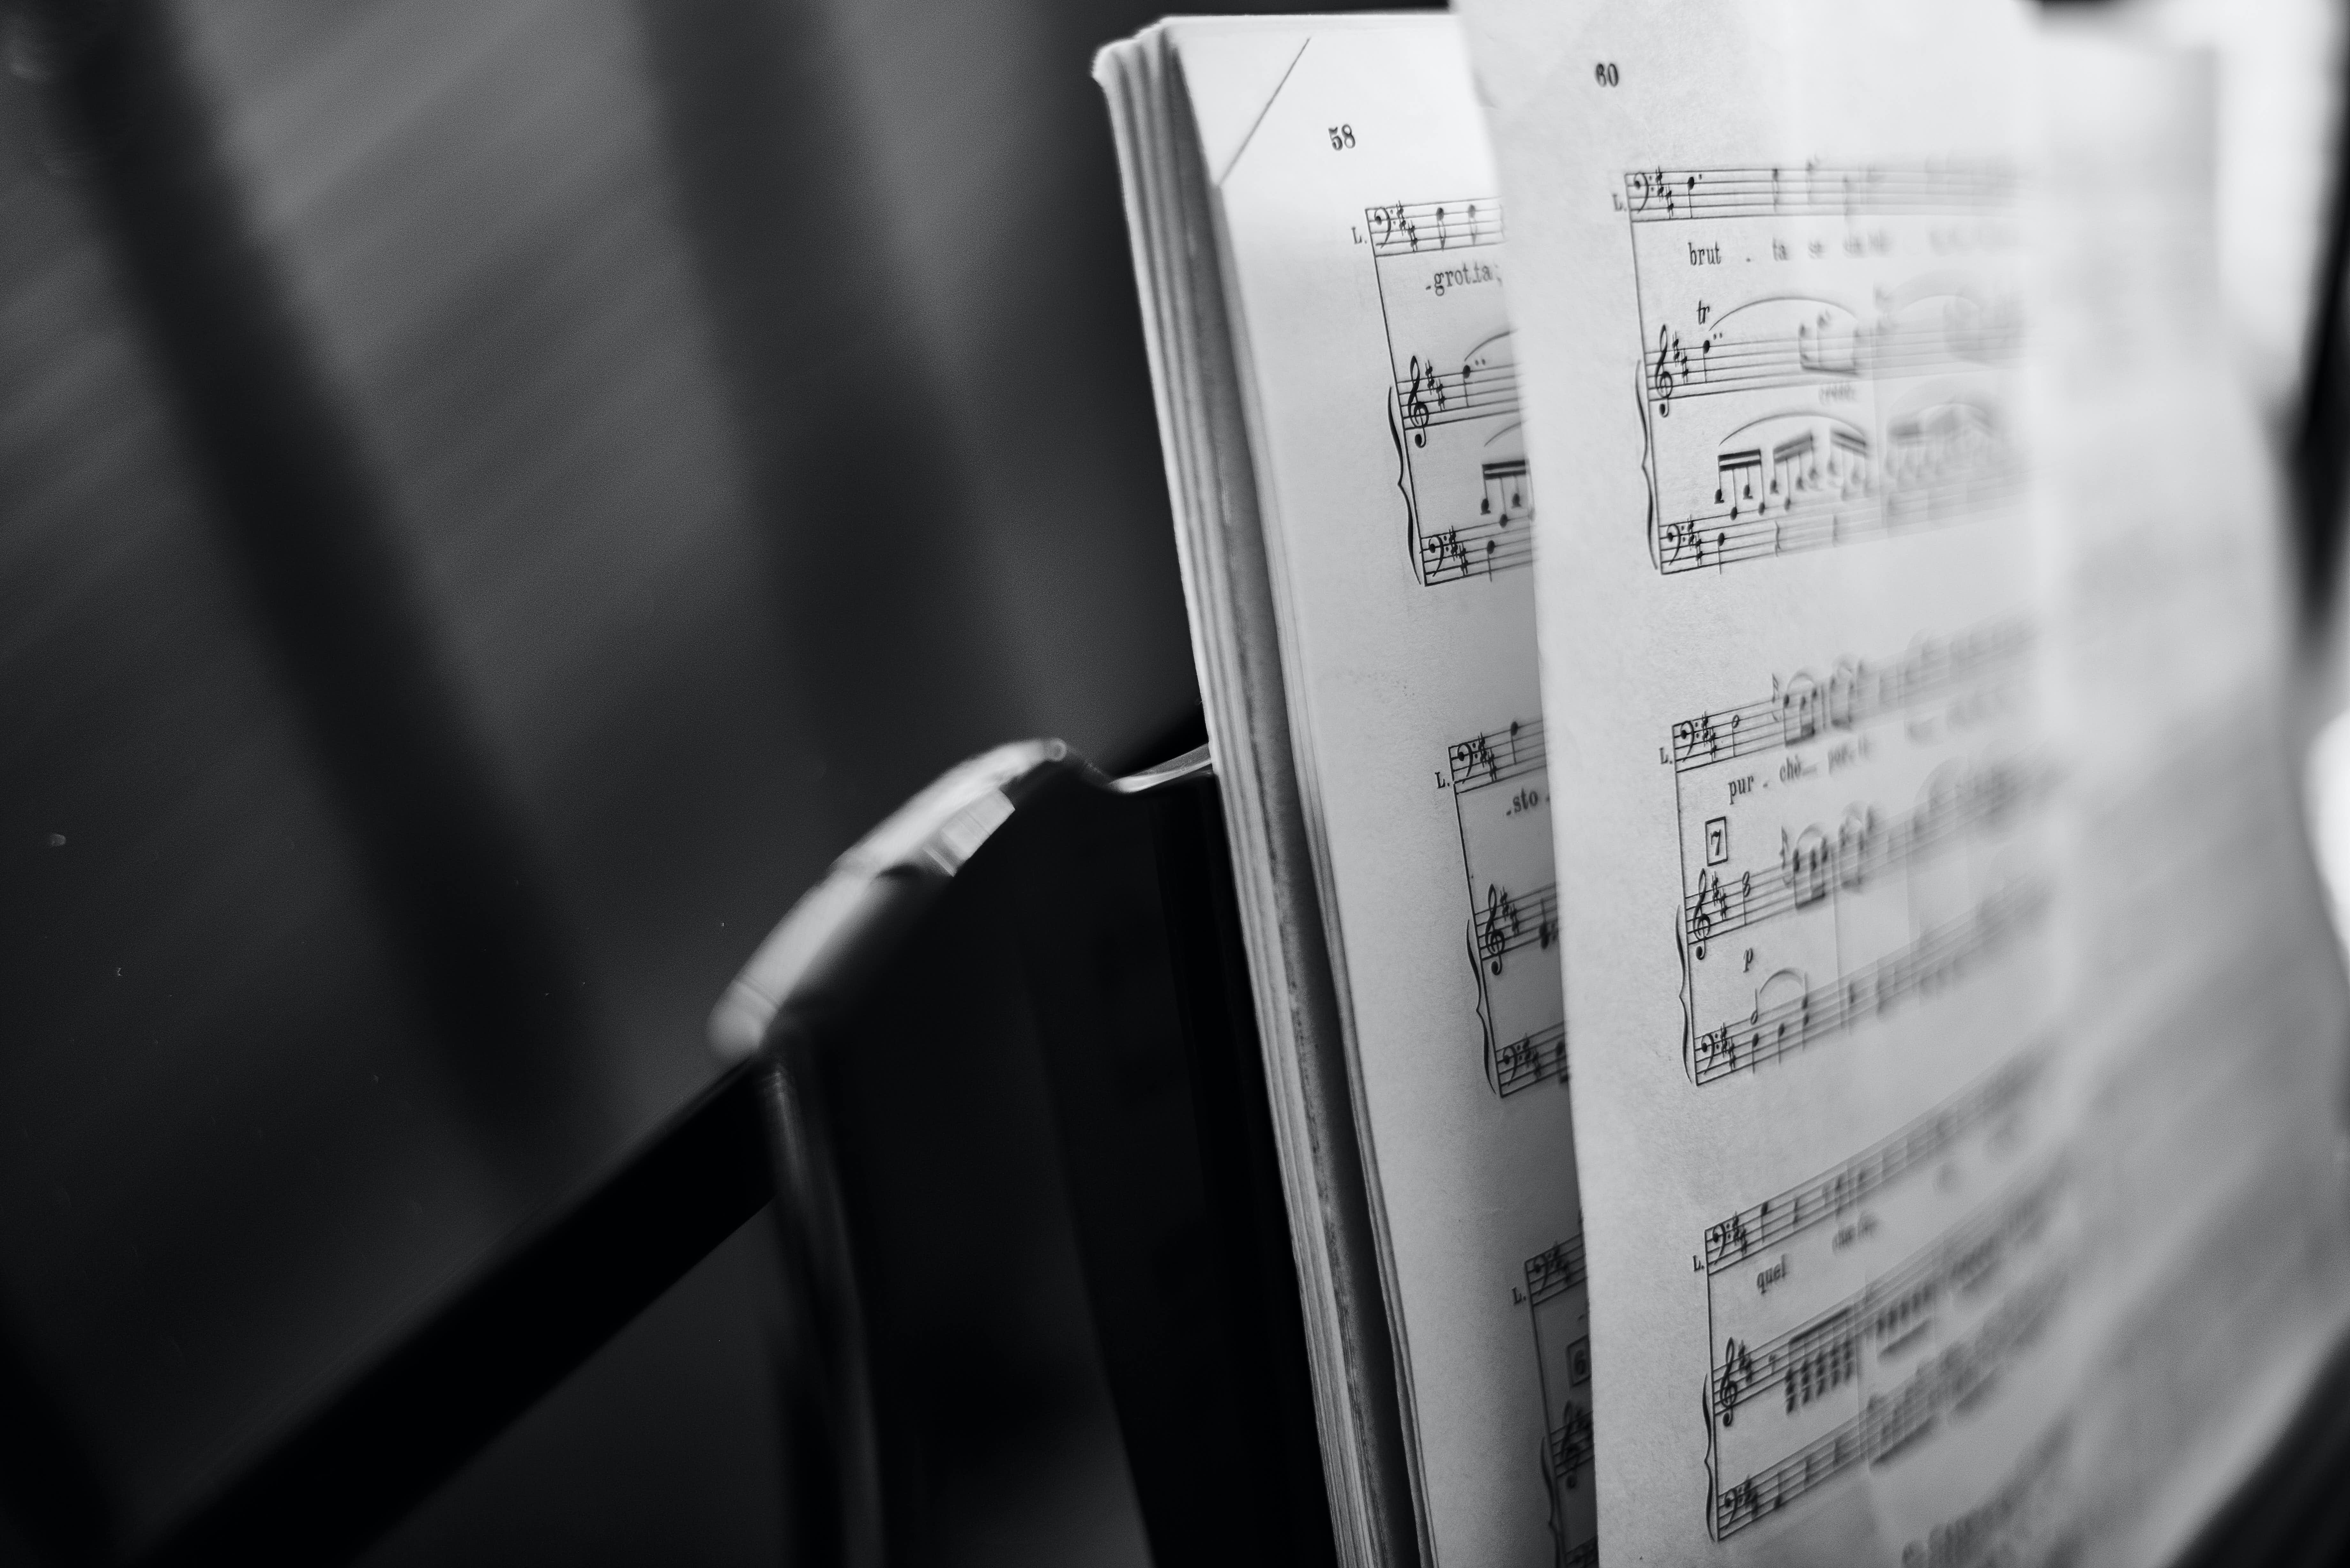 Концерт камерной музыки «Моцарт, Бетховен, Шопен, Рахманинов» со скидкой 50%